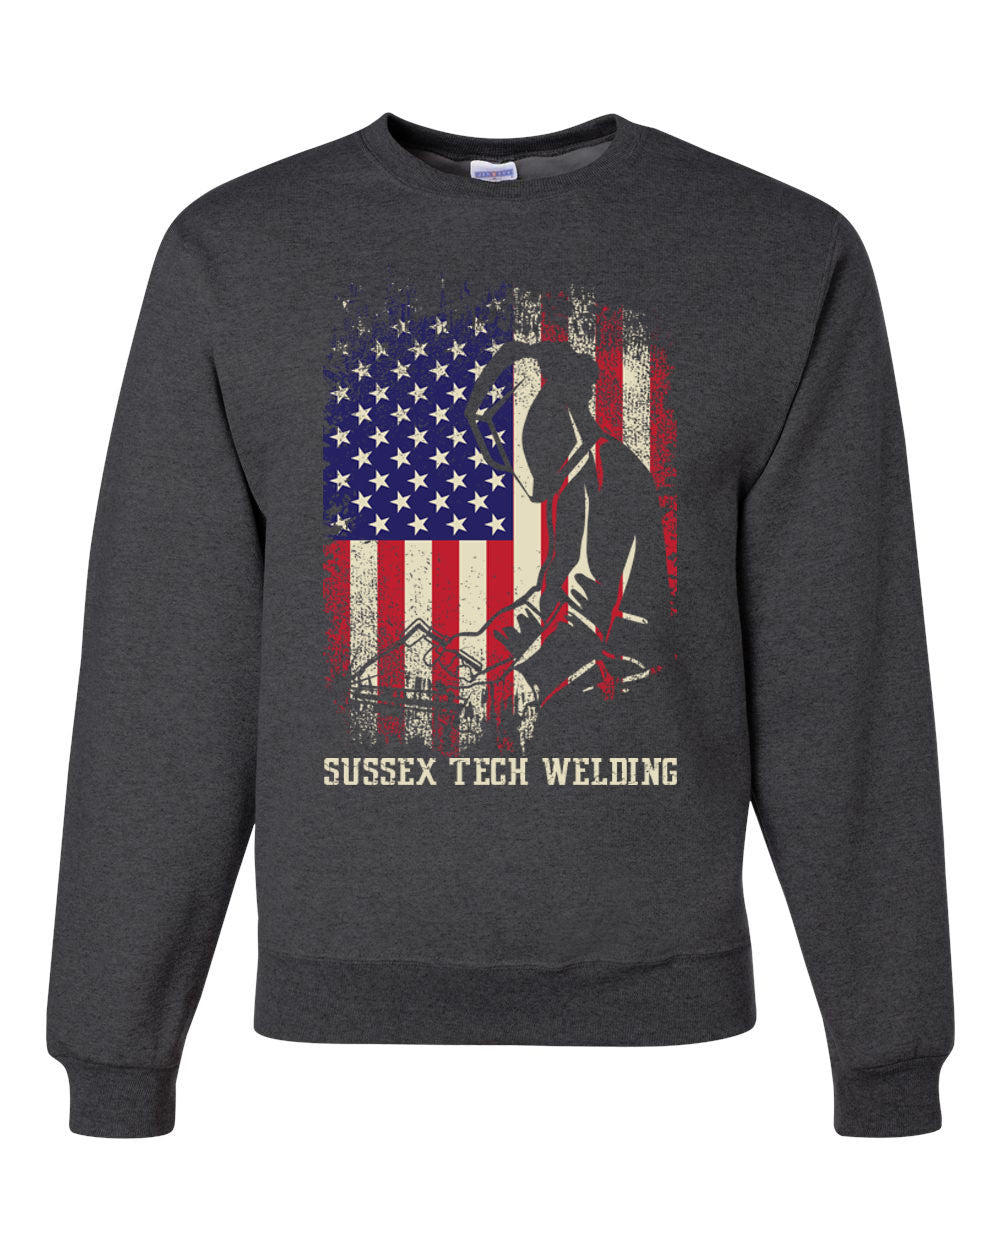 Sussex Tech Welding Design 5 non hooded sweatshirt